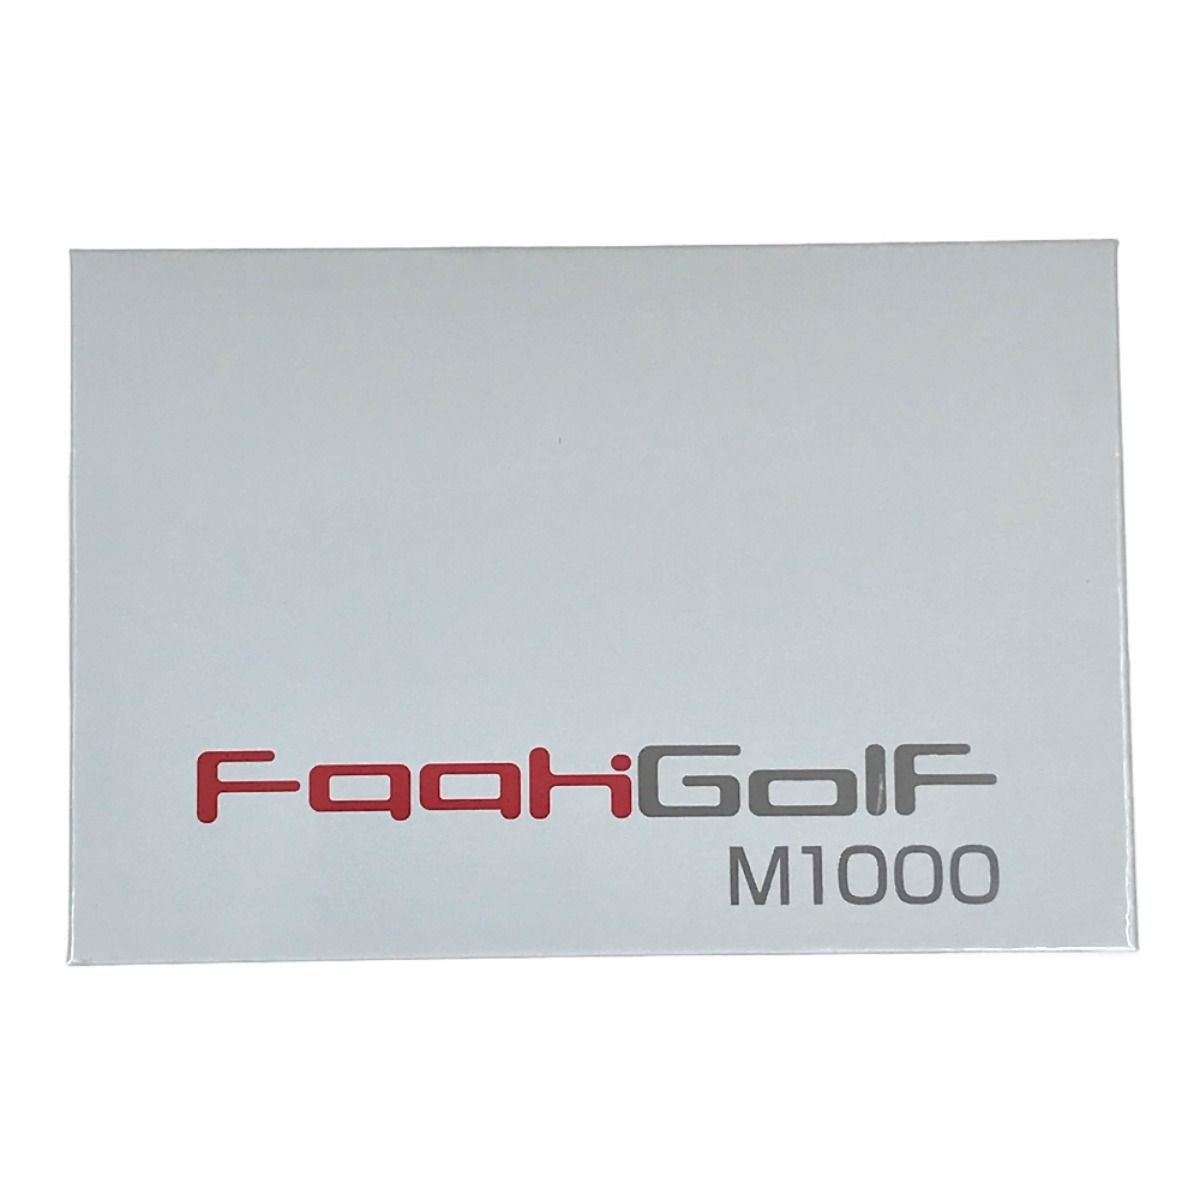 FaahGolf M1000 ゴルフレーザー距離計 未開封 - なんでもリサイクル